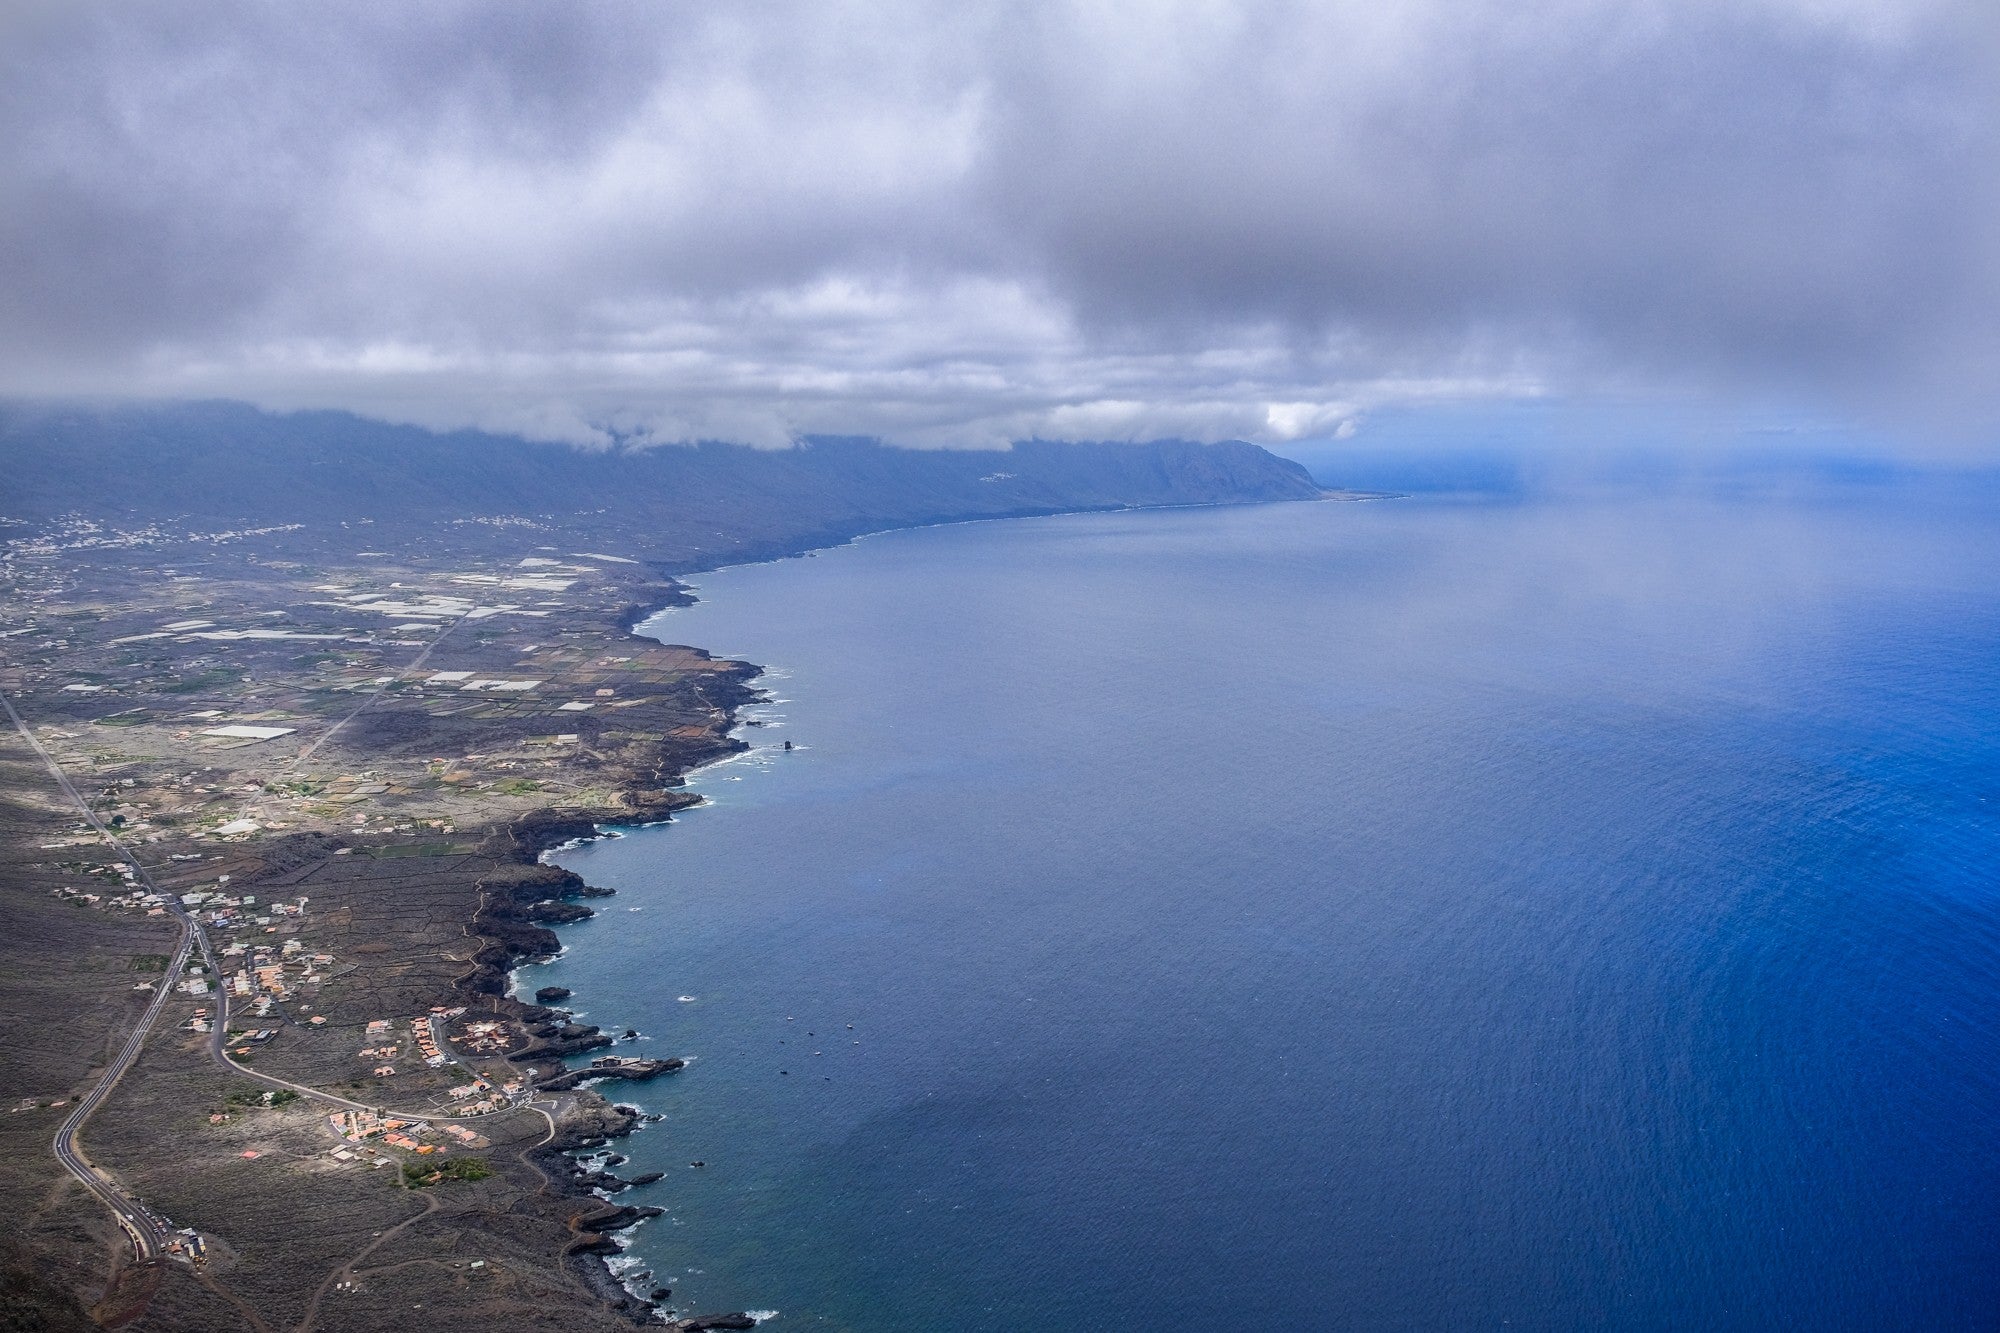 Vista de la costa del Golfo desde el Mirador de la Peña.